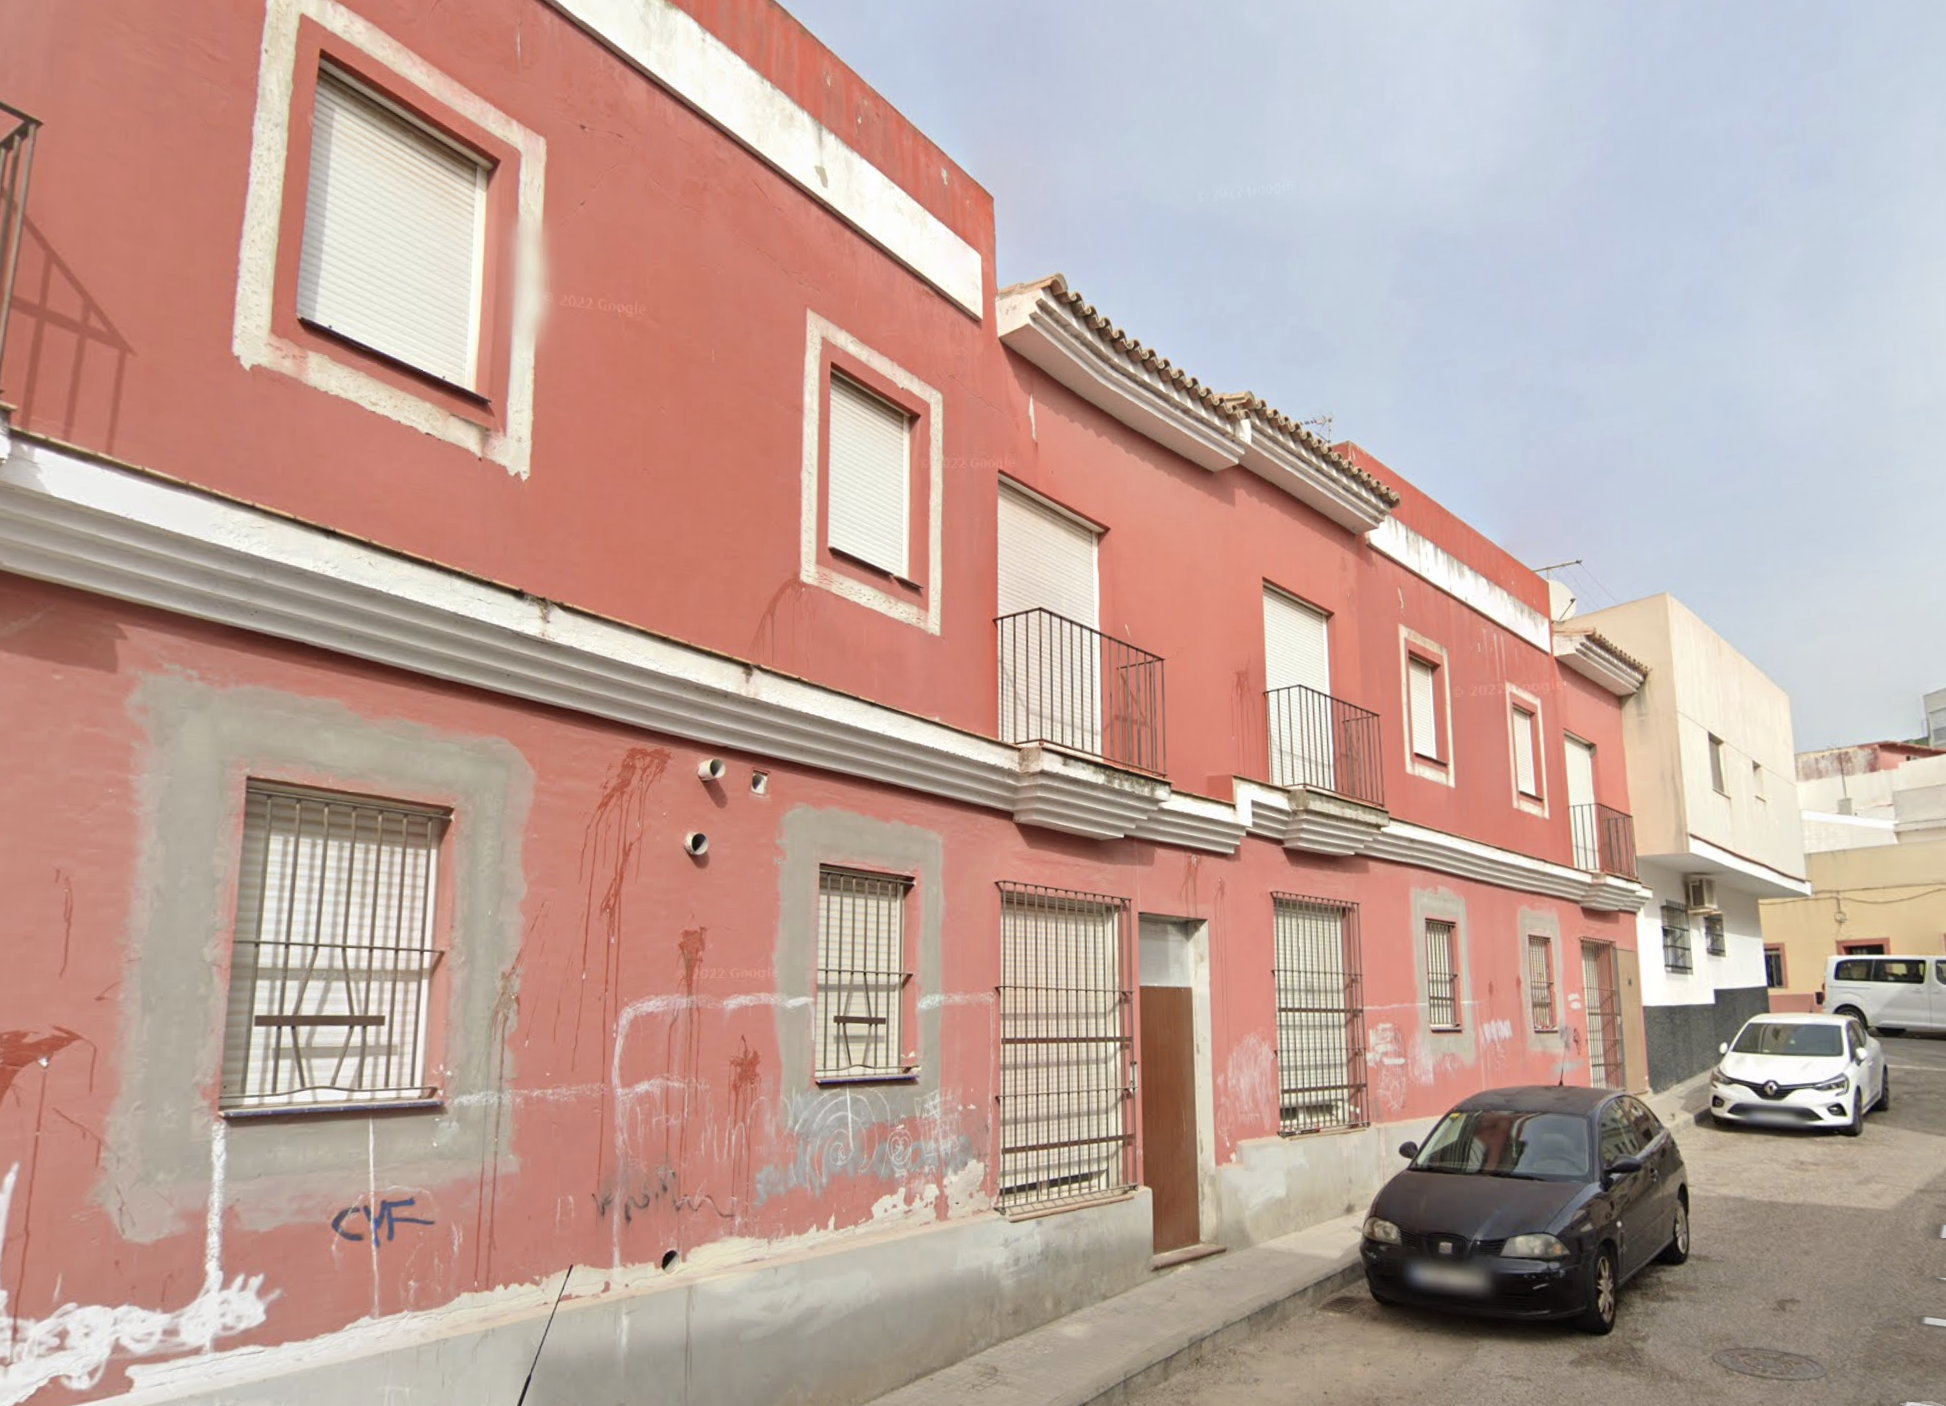 Inmueble abandonado de la calle Jacinto Benavente, en la barriada del Agrimensor de Jerez, en una imagen de Google Maps.